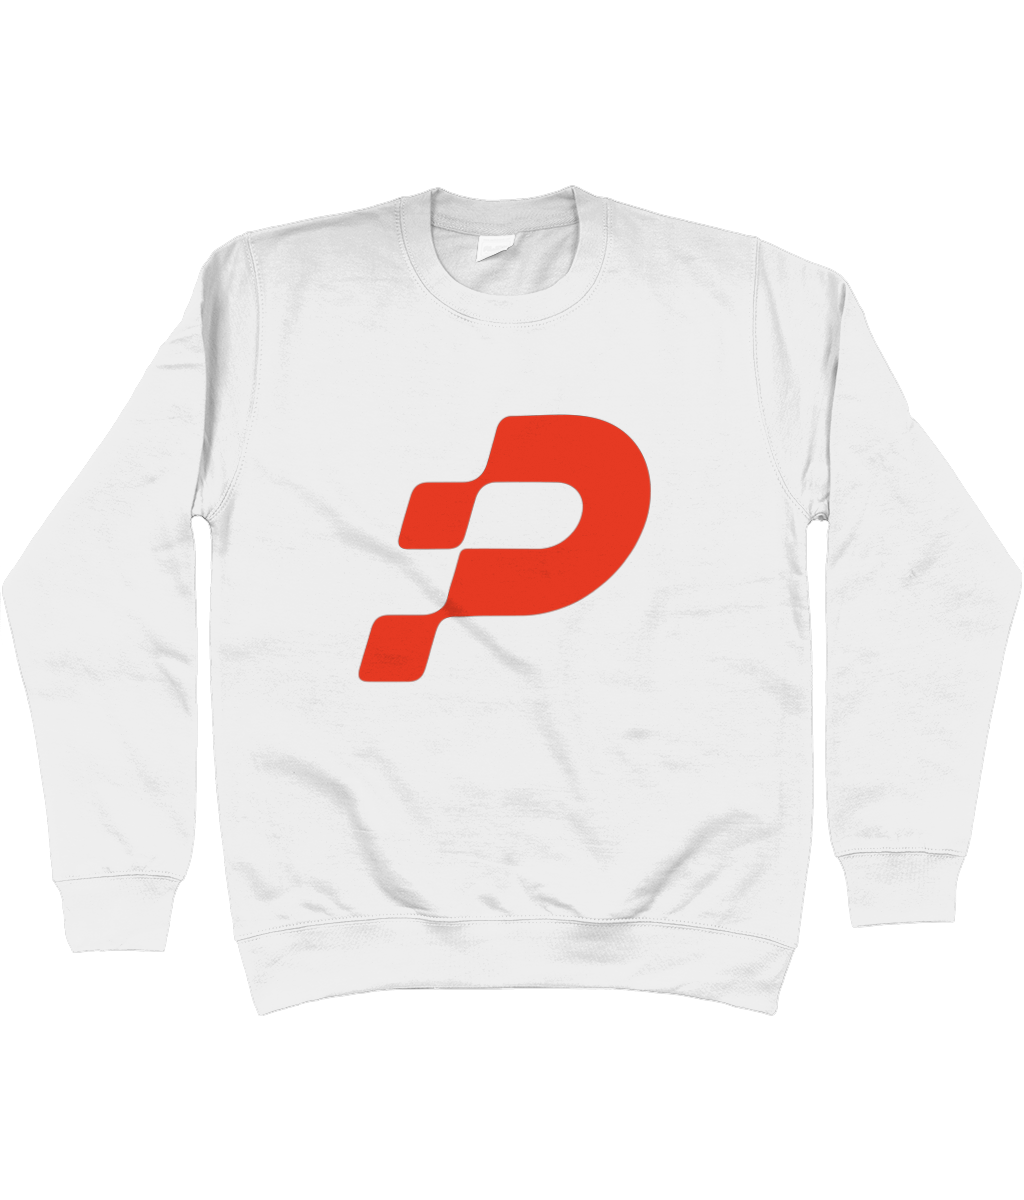 Fraser Paterson P Logo Sweatshirt